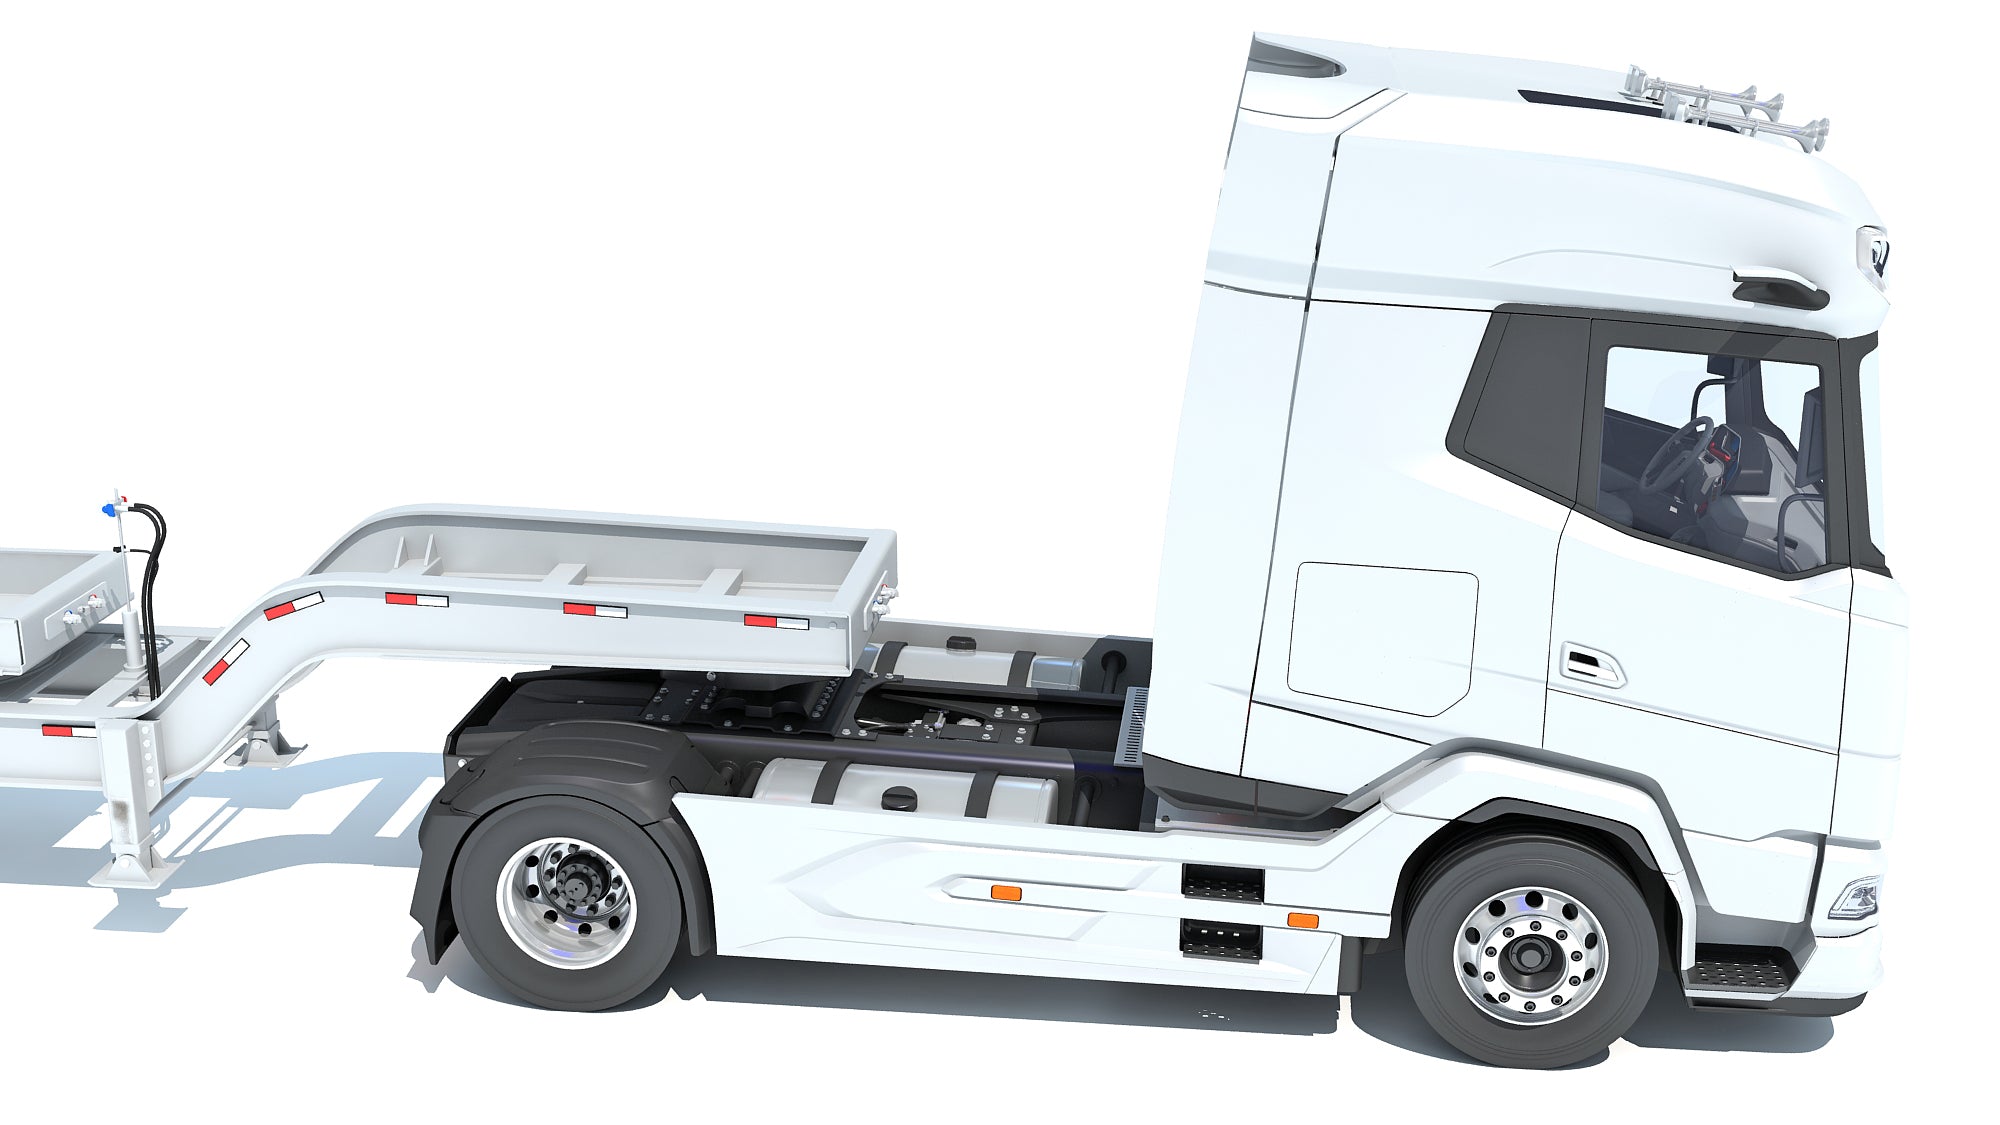 DAF Semi Truck with Lowboy Trailer